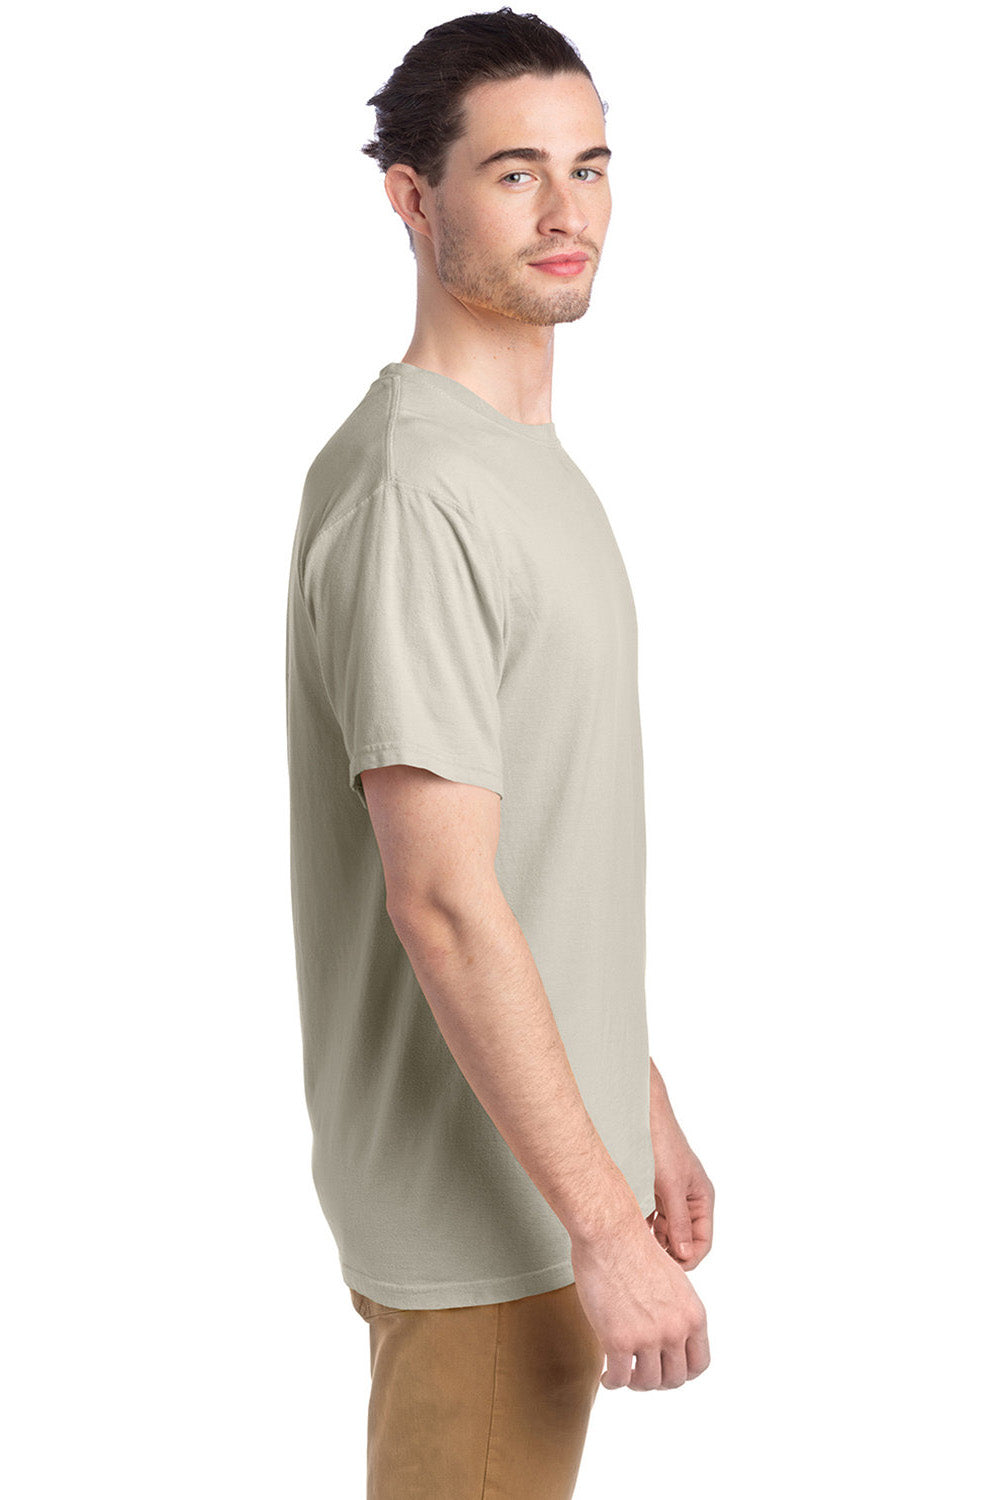 ComfortWash by Hanes GDH100 Mens Short Sleeve Crewneck T-Shirt Parchment SIde